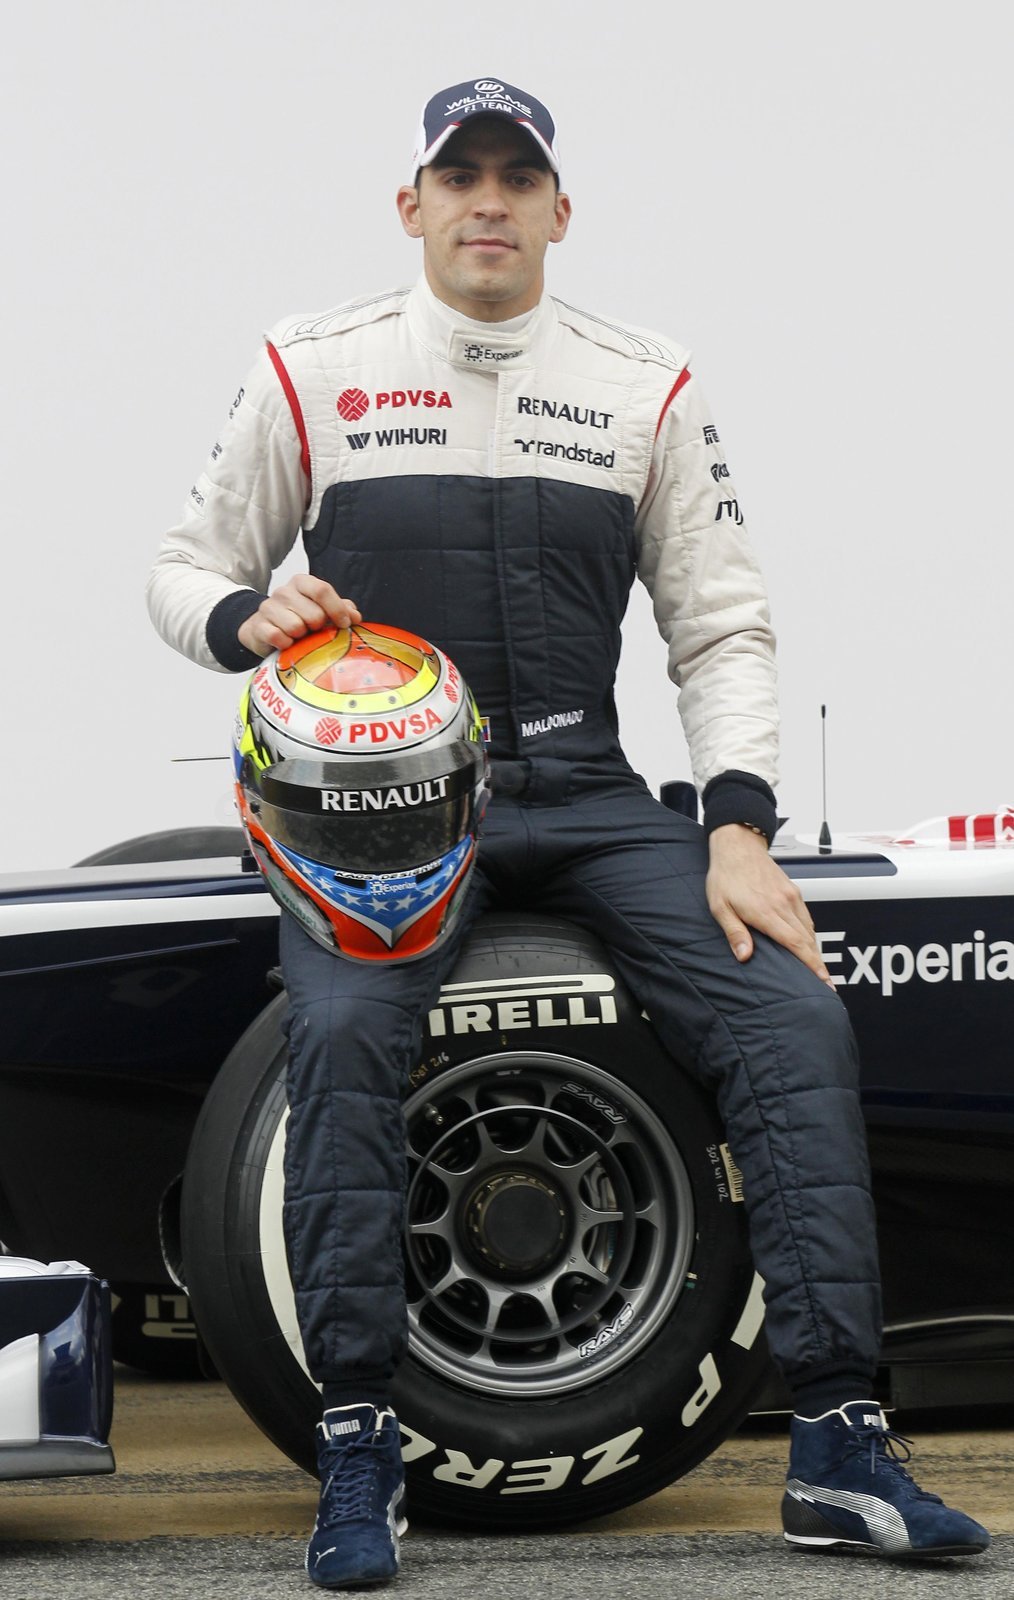 Stáj Williams jako poslední z jedenácti týmů formule 1 představila monopost na novou sezonu. Piloti Pastor Maldonado (na snímku) a nováček Valtteri Bottas odhalili vůz při skromném aktu těsně před zahájením oficiálního testování na okruhu v Barceloně.